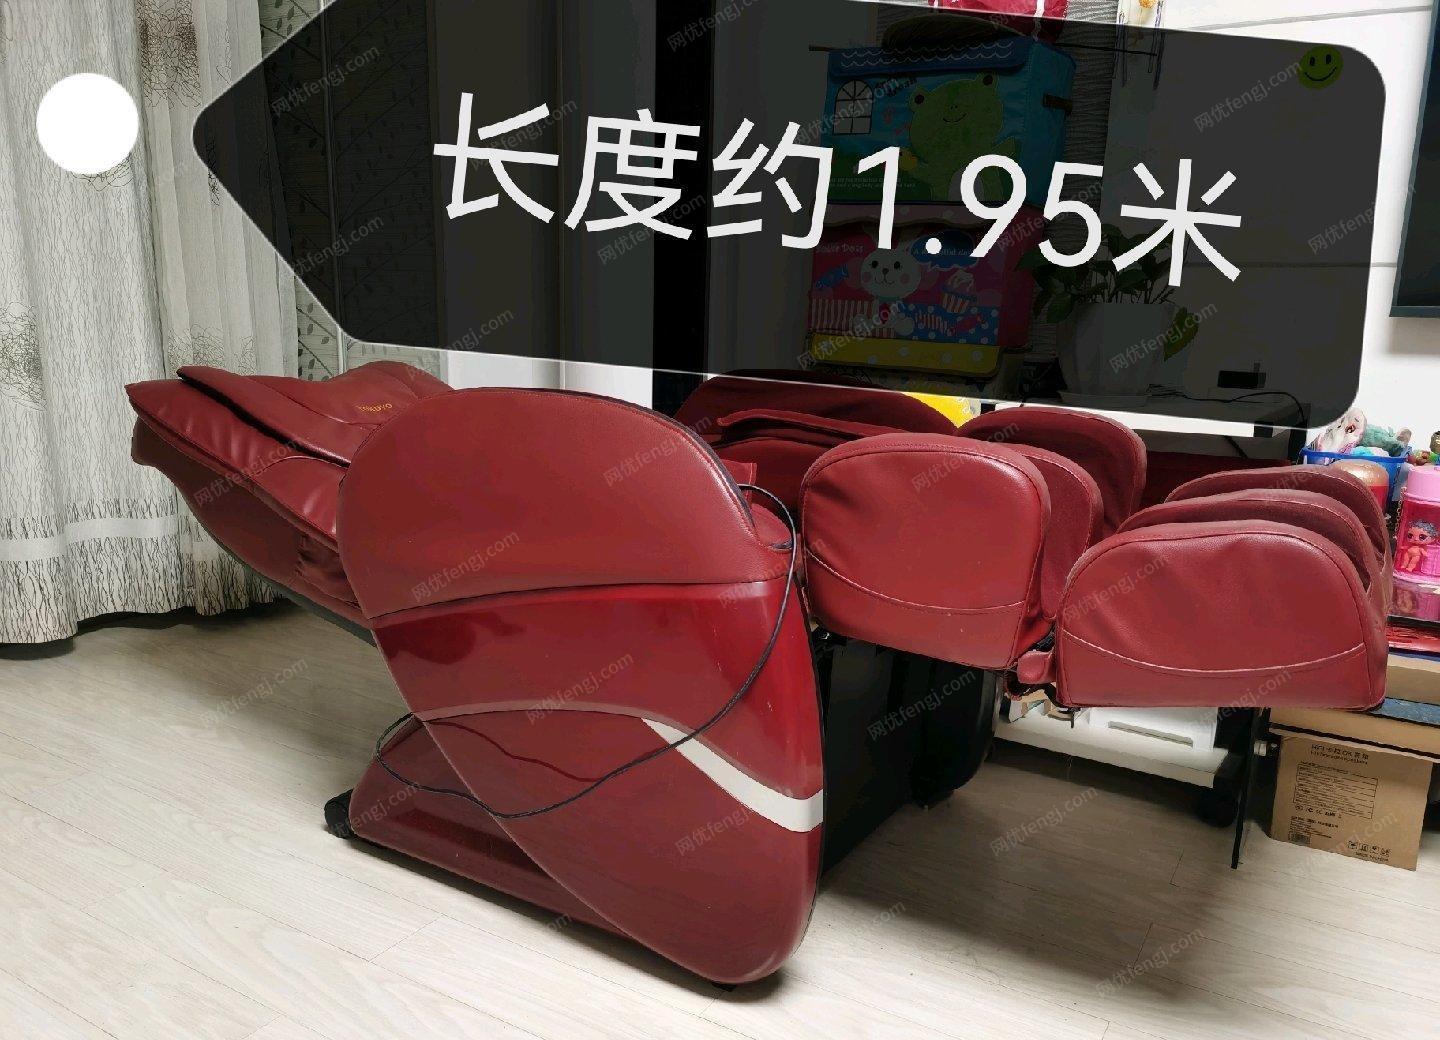 上海闵行区出售督洋品牌按摩椅 功能正常 8成新